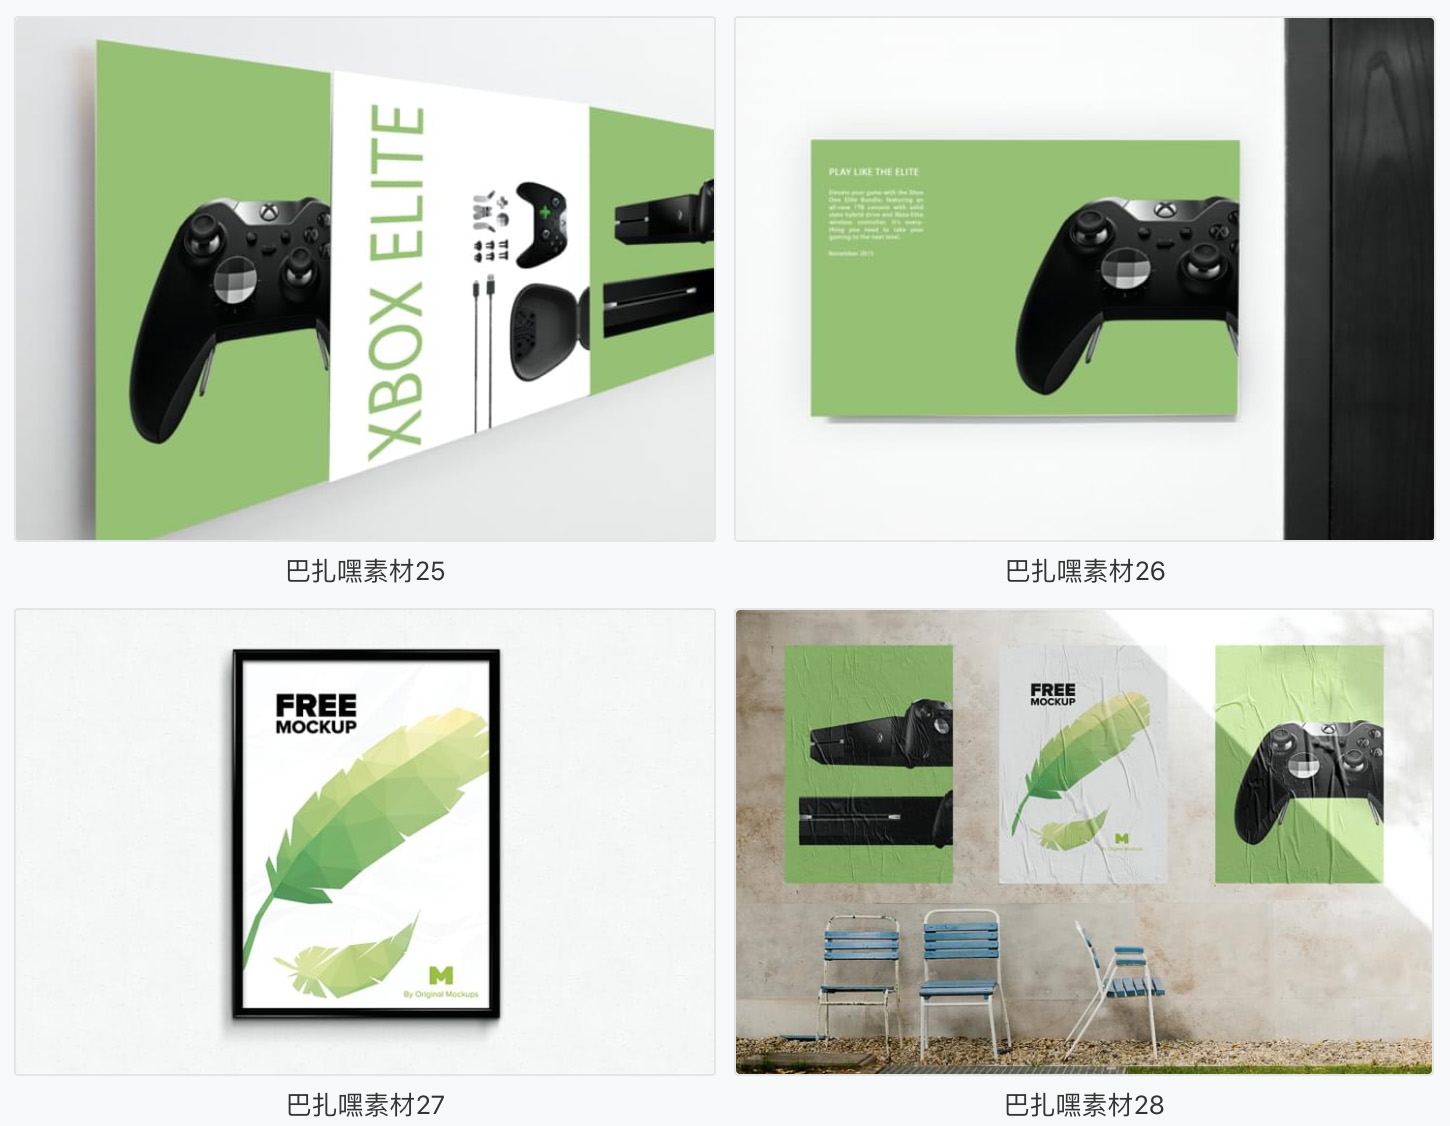 【环保样机】绿色环保品牌VI智能贴图样机名片办公用品